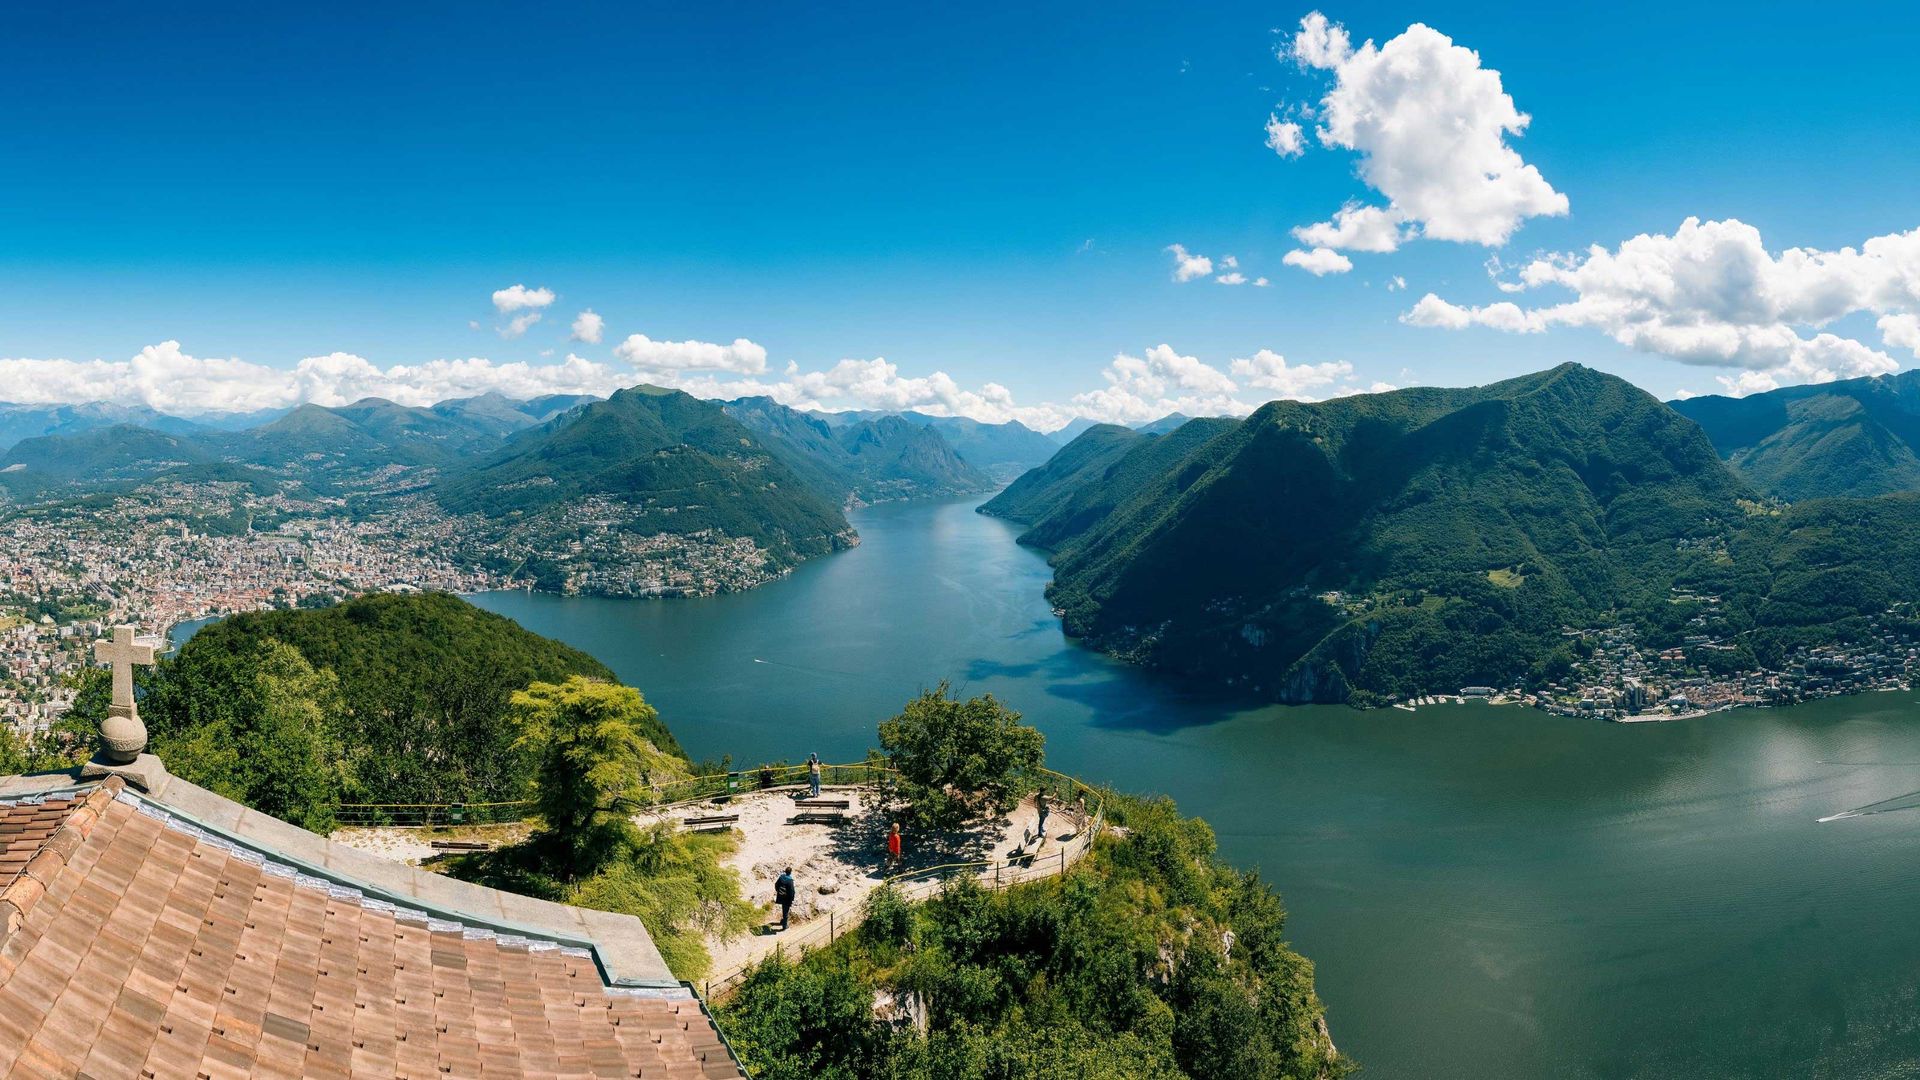 Panoramablick vom Monte San Salvatore auf den von Bergen umgebenen Luganersee mit Besuchern, die die Landschaft von einem hohen Aussichtspunkt aus genießen.